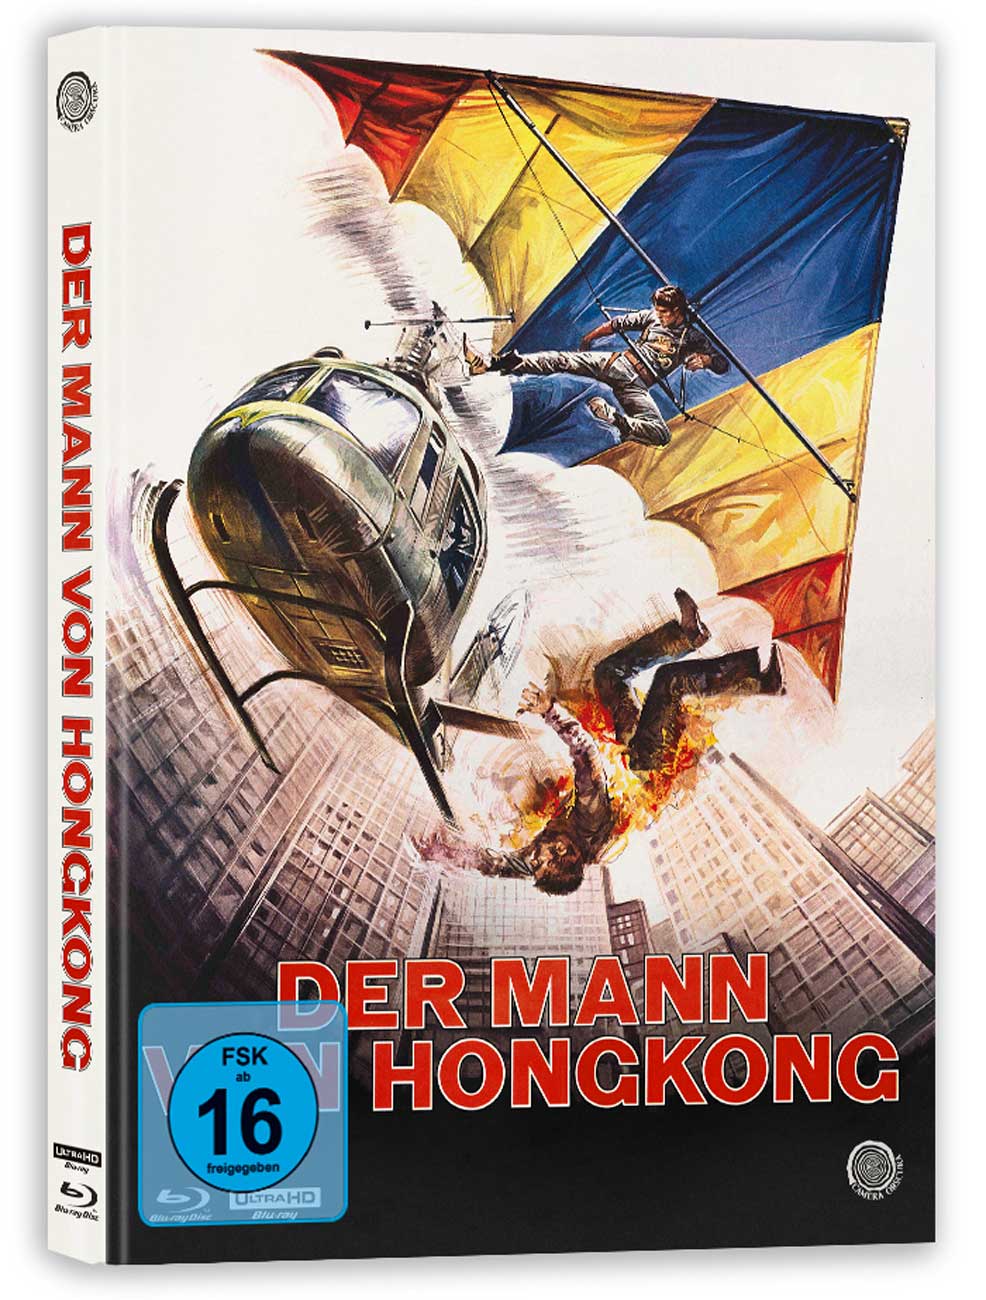 Der-Mann-von-Hongkong-Cover-D-3D-Ansicht_1024x1024_2x.jpg